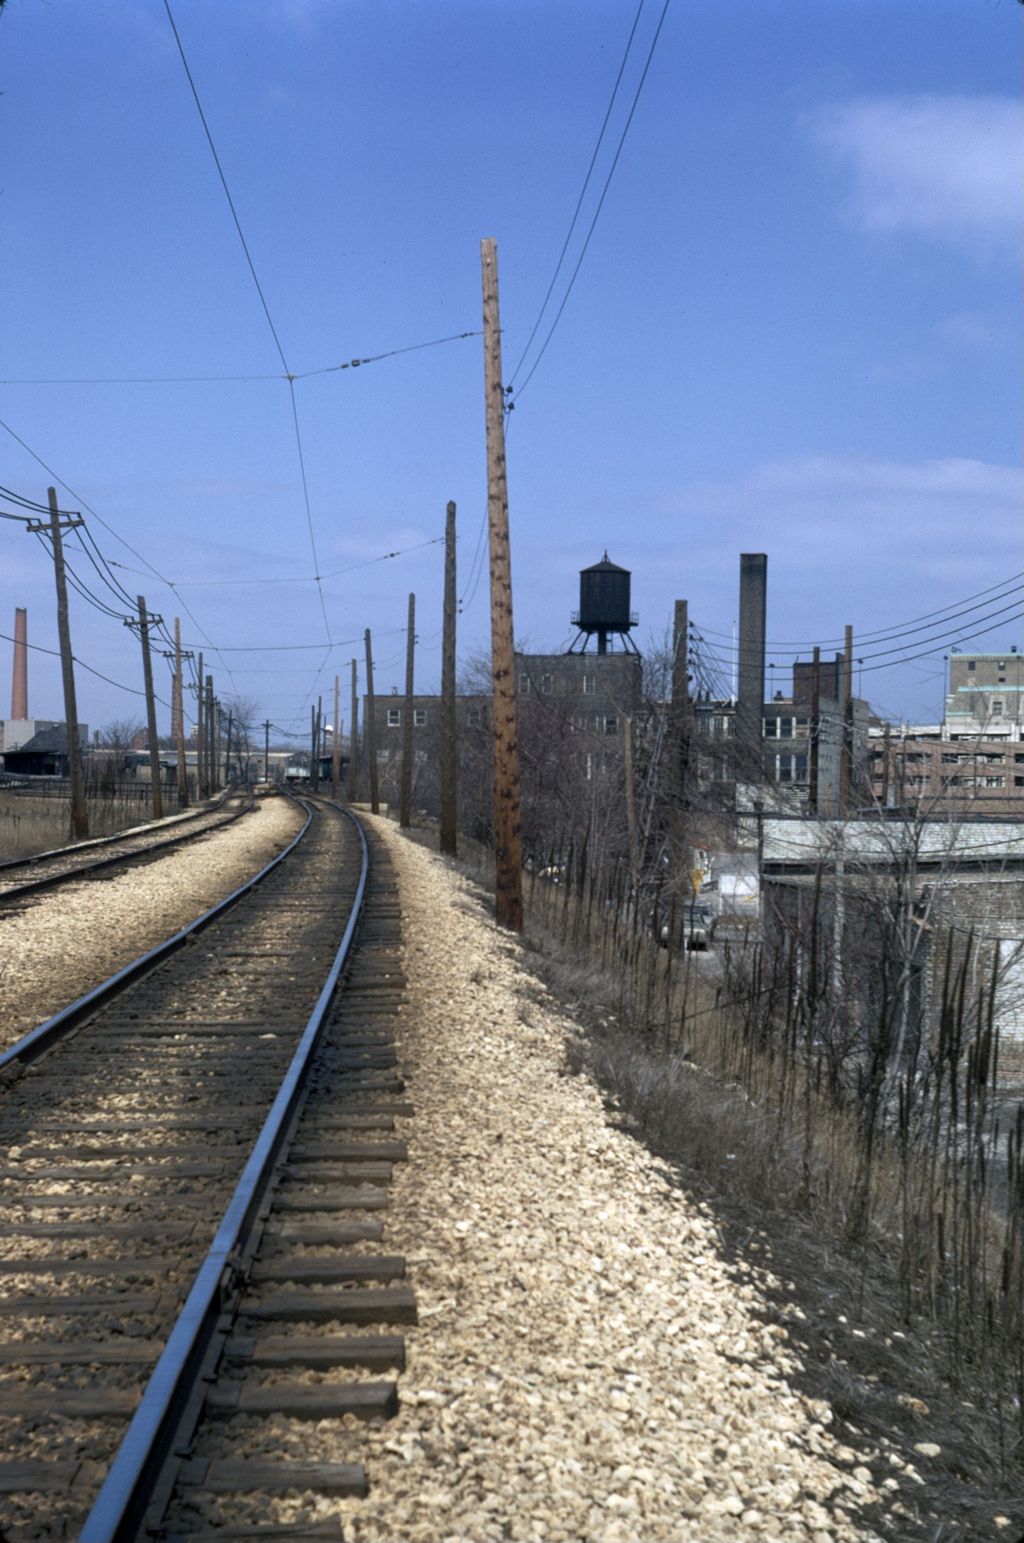 Miniature of CTA elevated tracks, Evanston